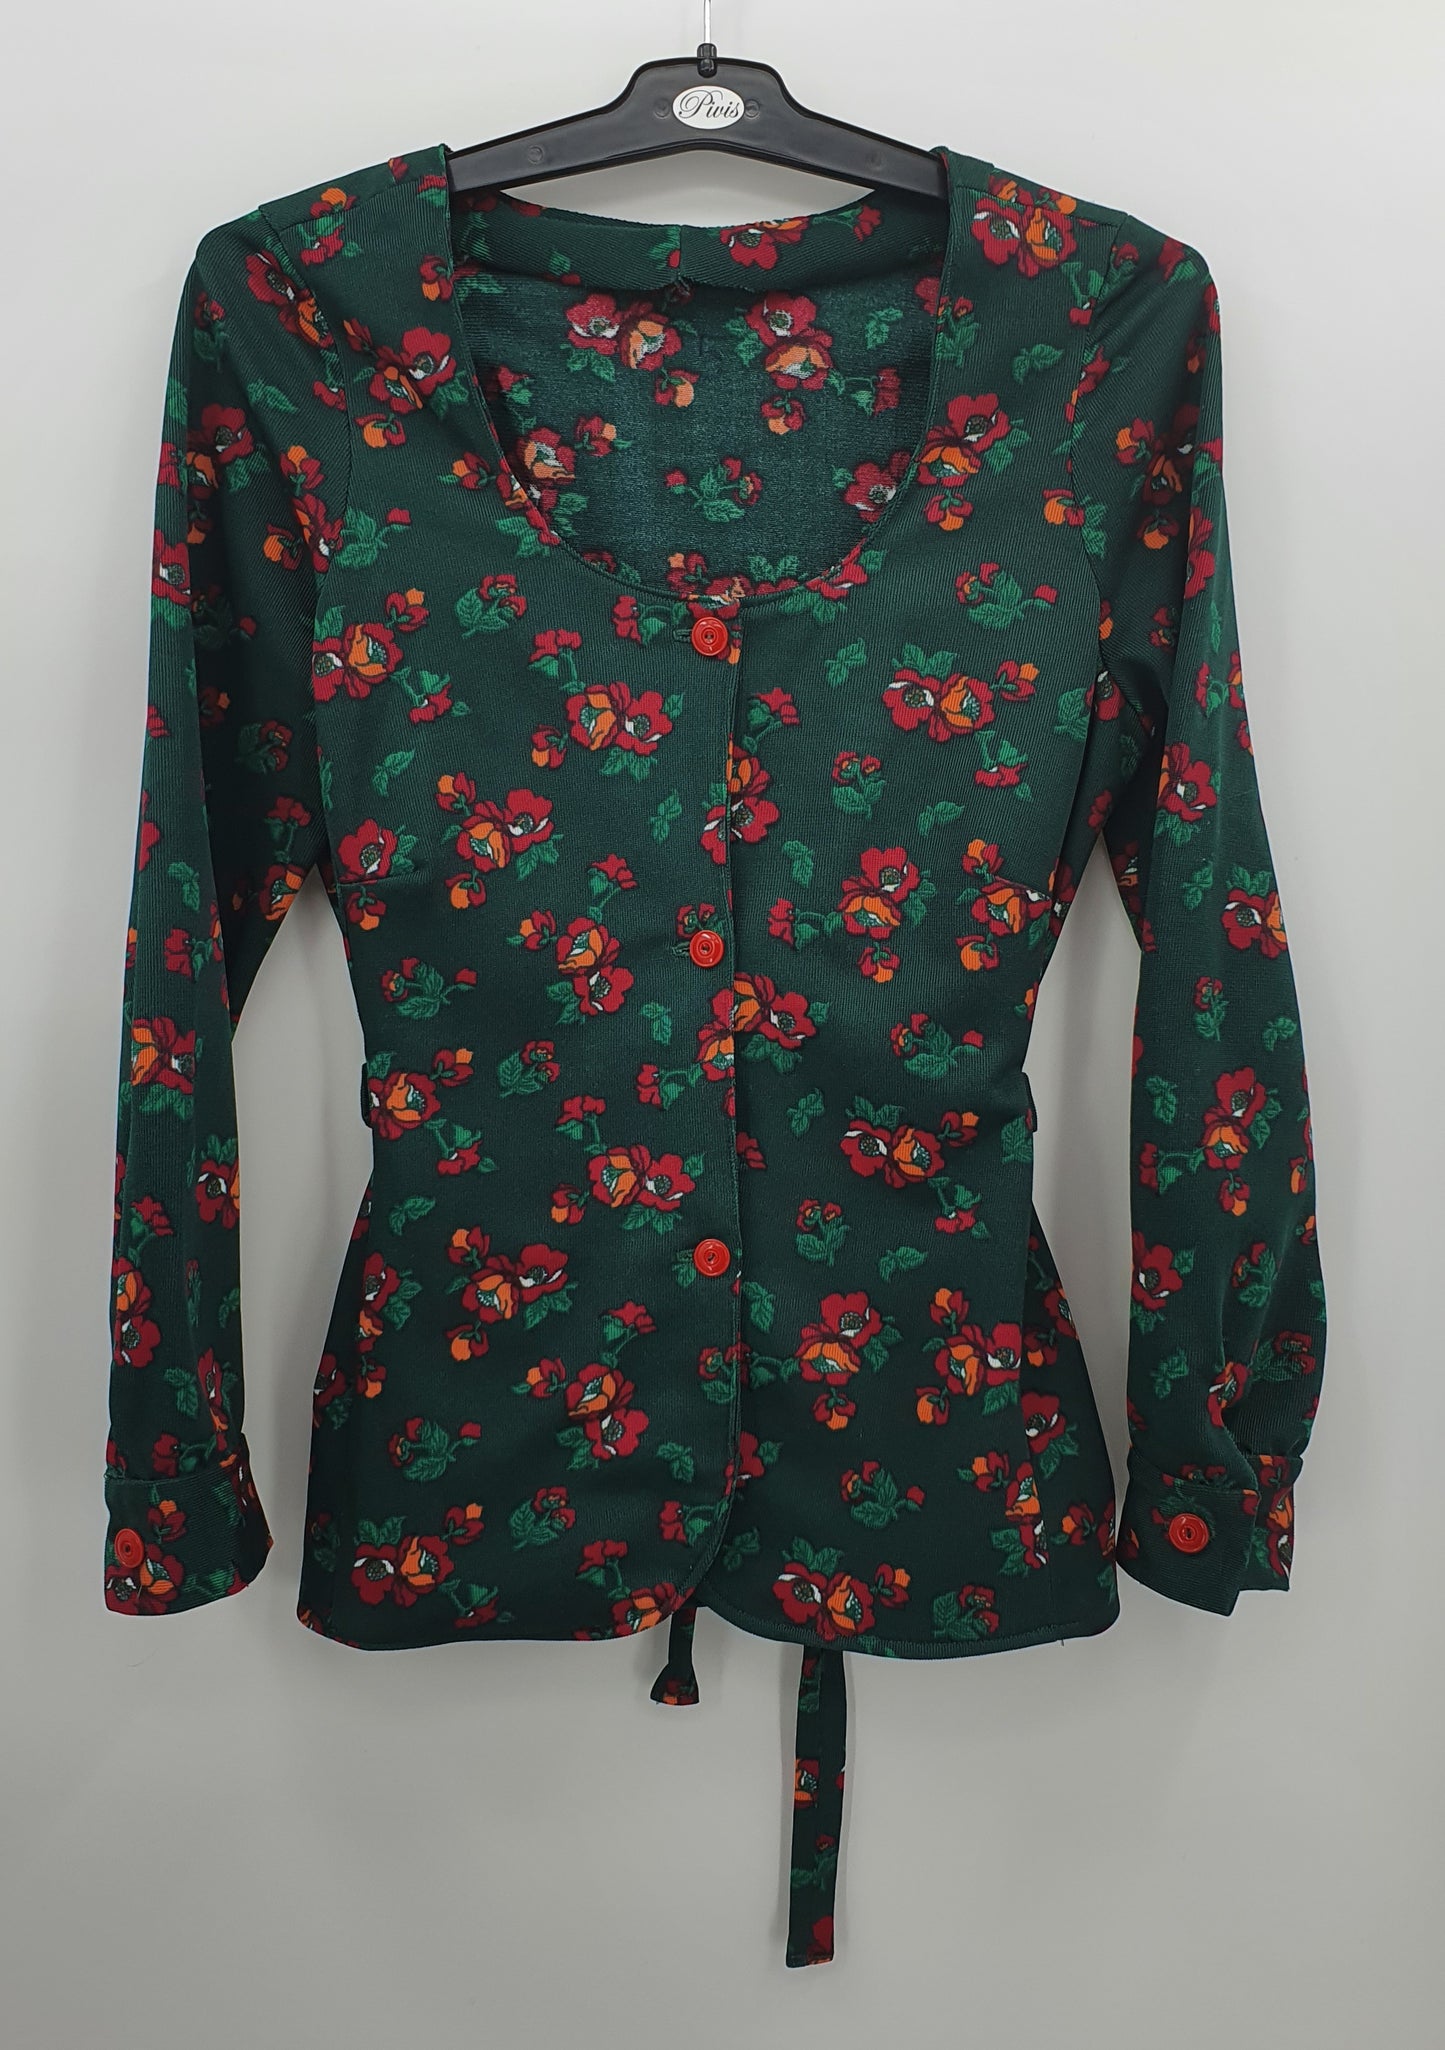 Tummanvihreä kukkakuvioinen paitajakku, 70-luku, koko 36-38